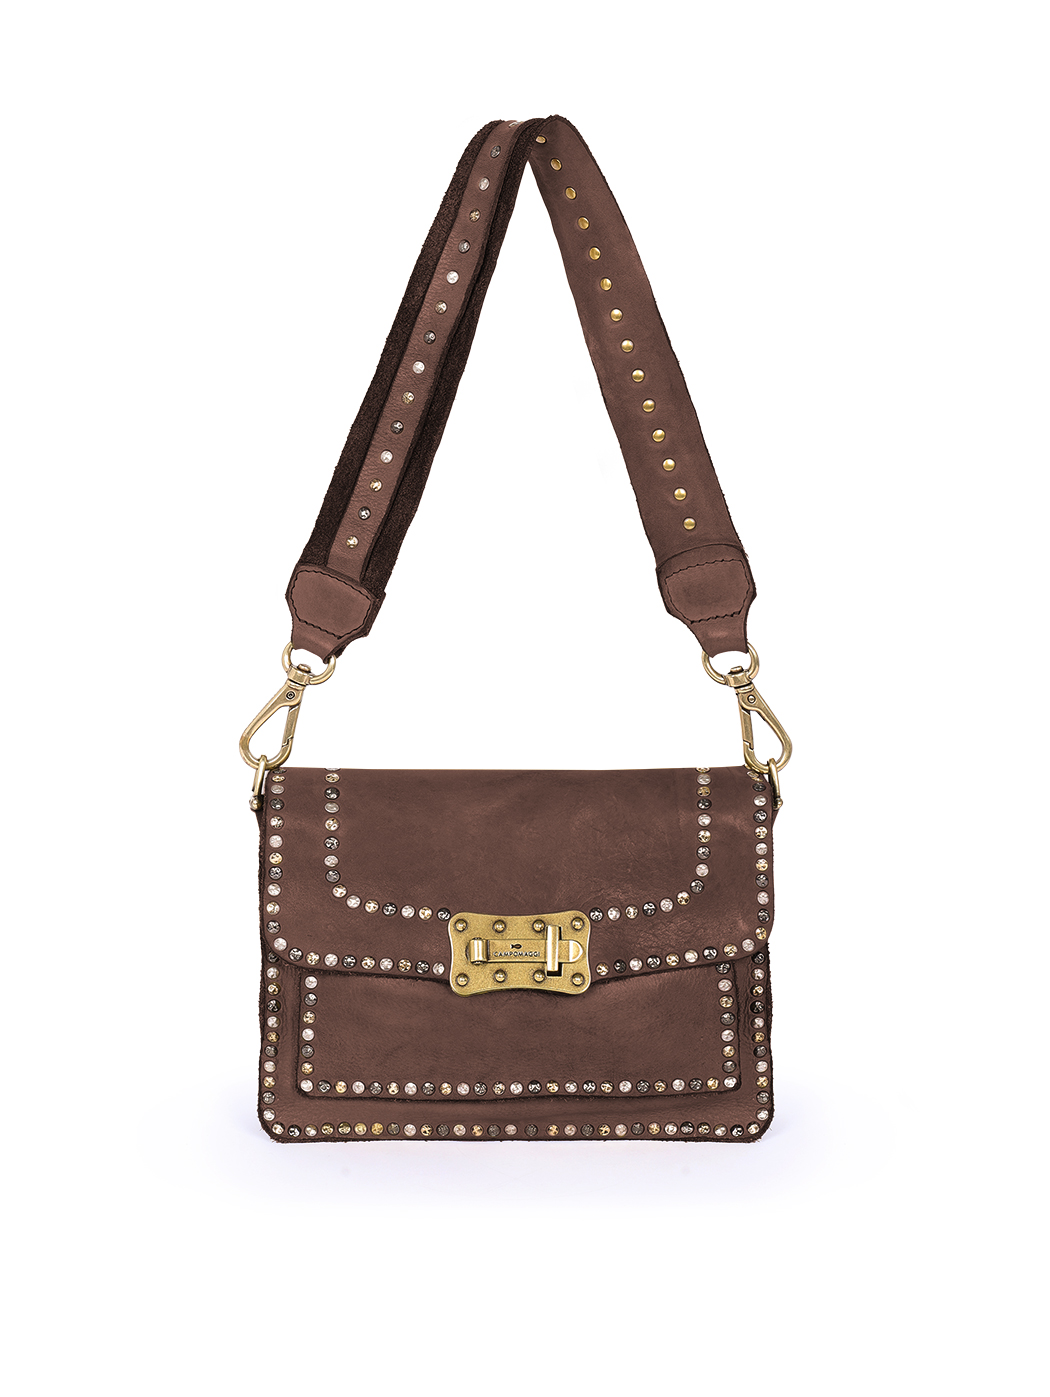 Мини - сумочка со съемным плечевым ремнем темно - коричневого цвета